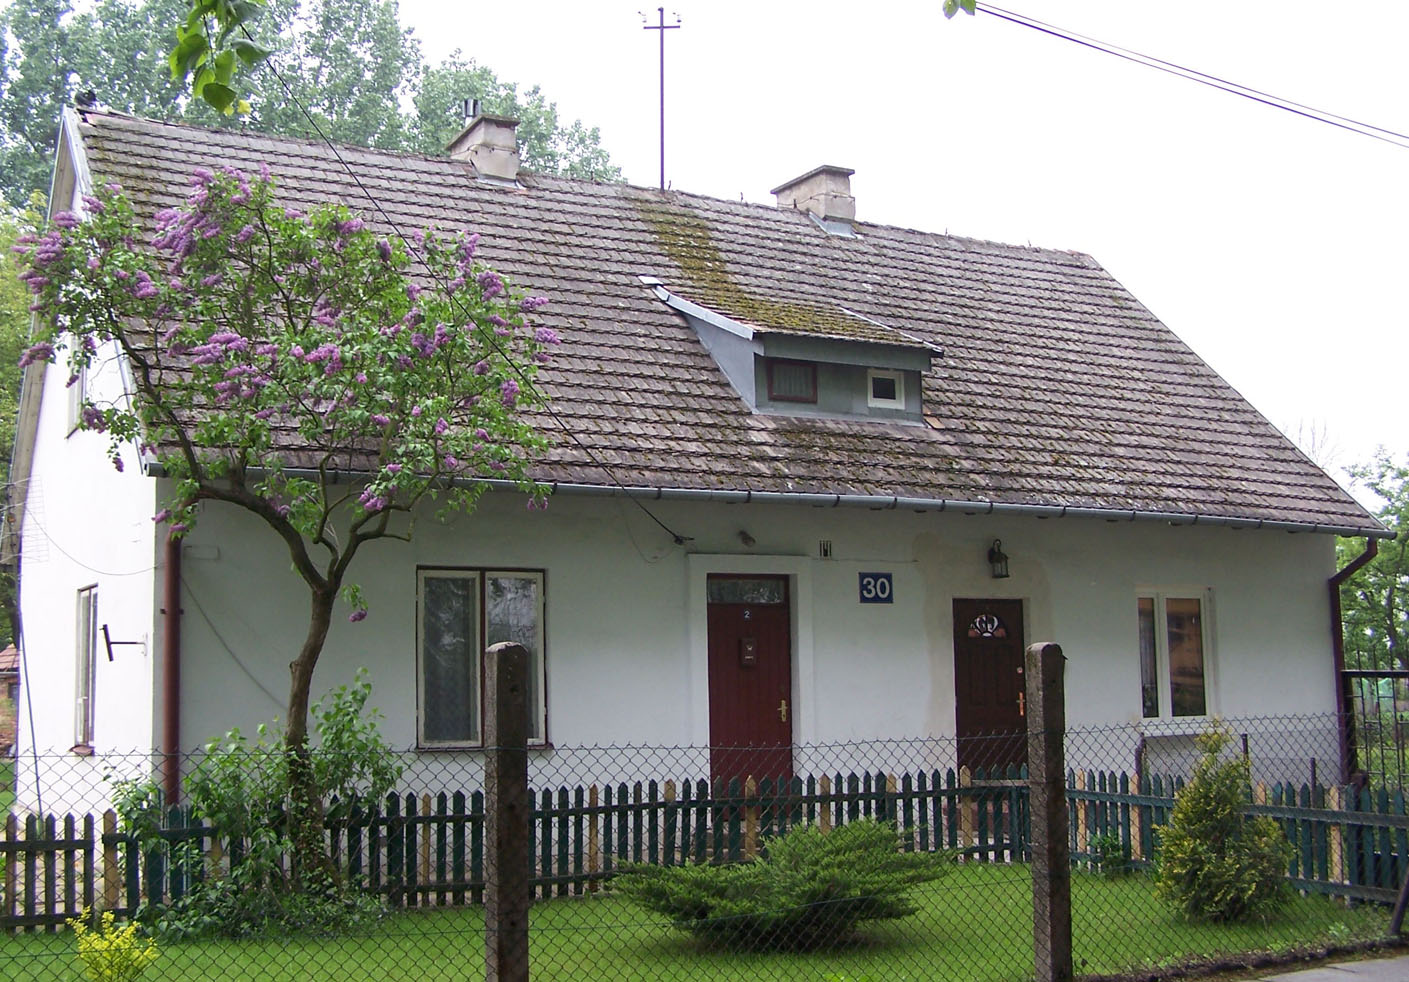  domek mieszkalny nr 30 w Radzikowie (376401) bytes.jpg